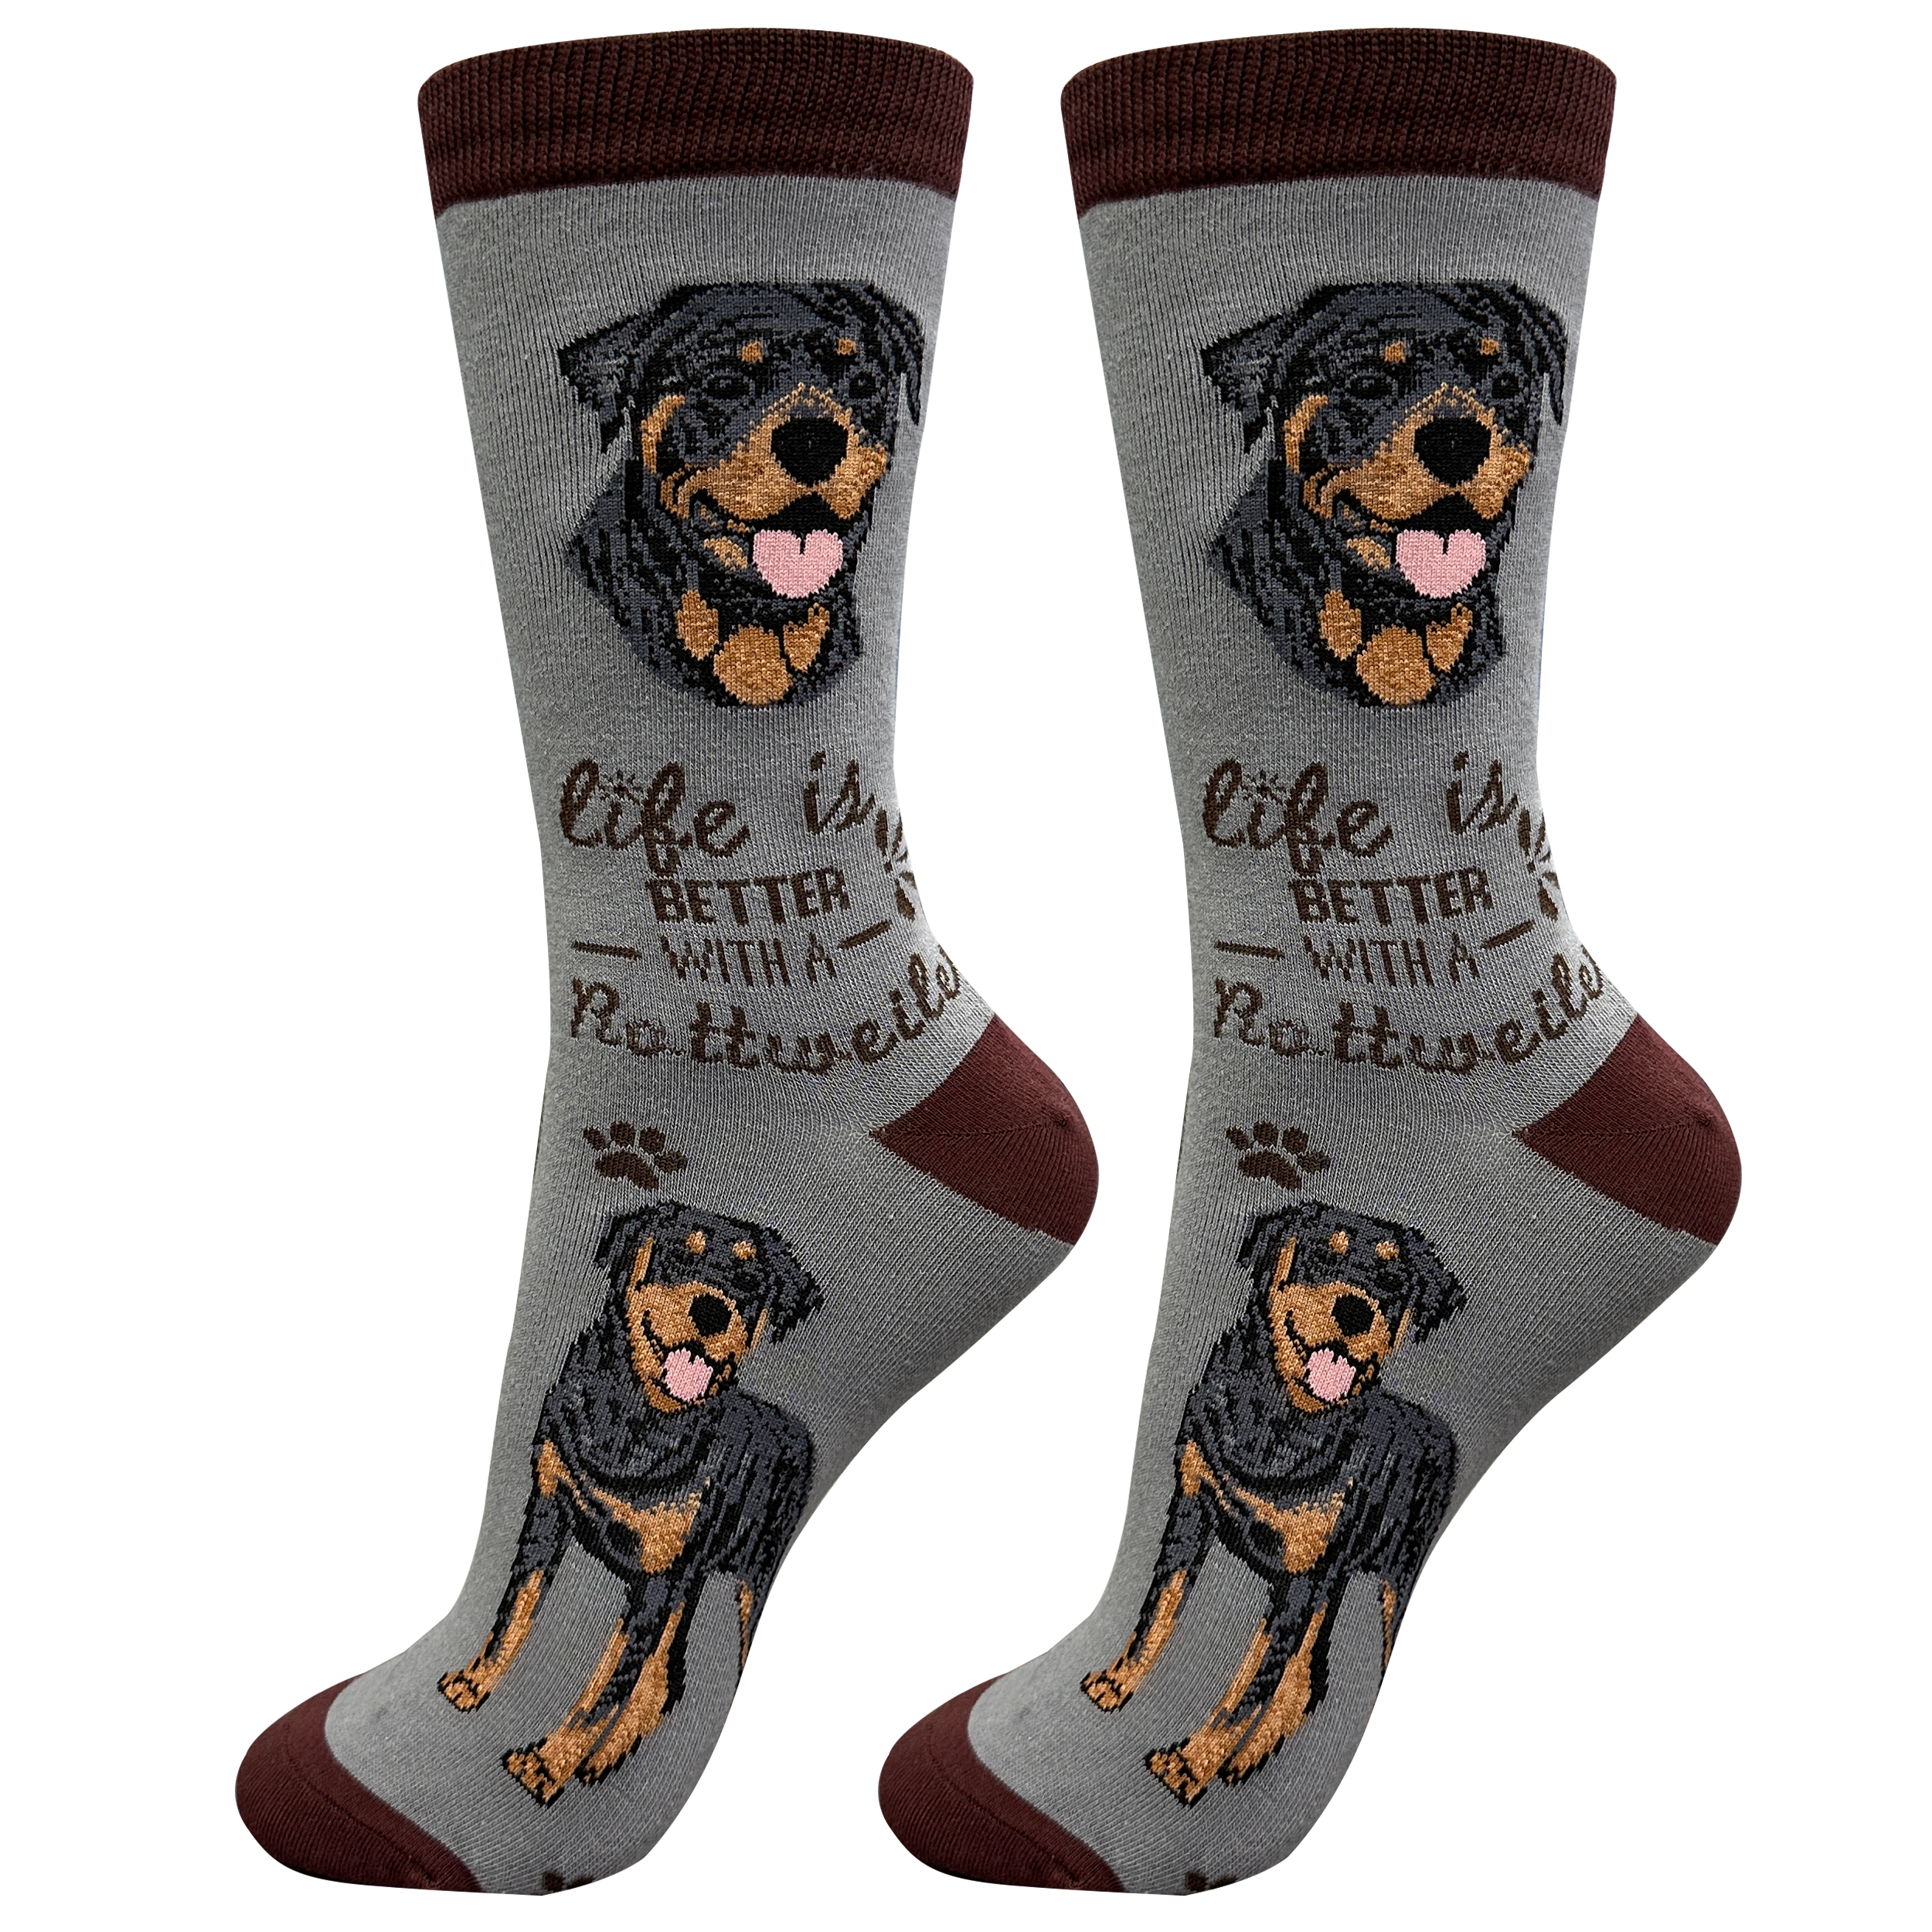 Rottweiler Dog Socks Unisex